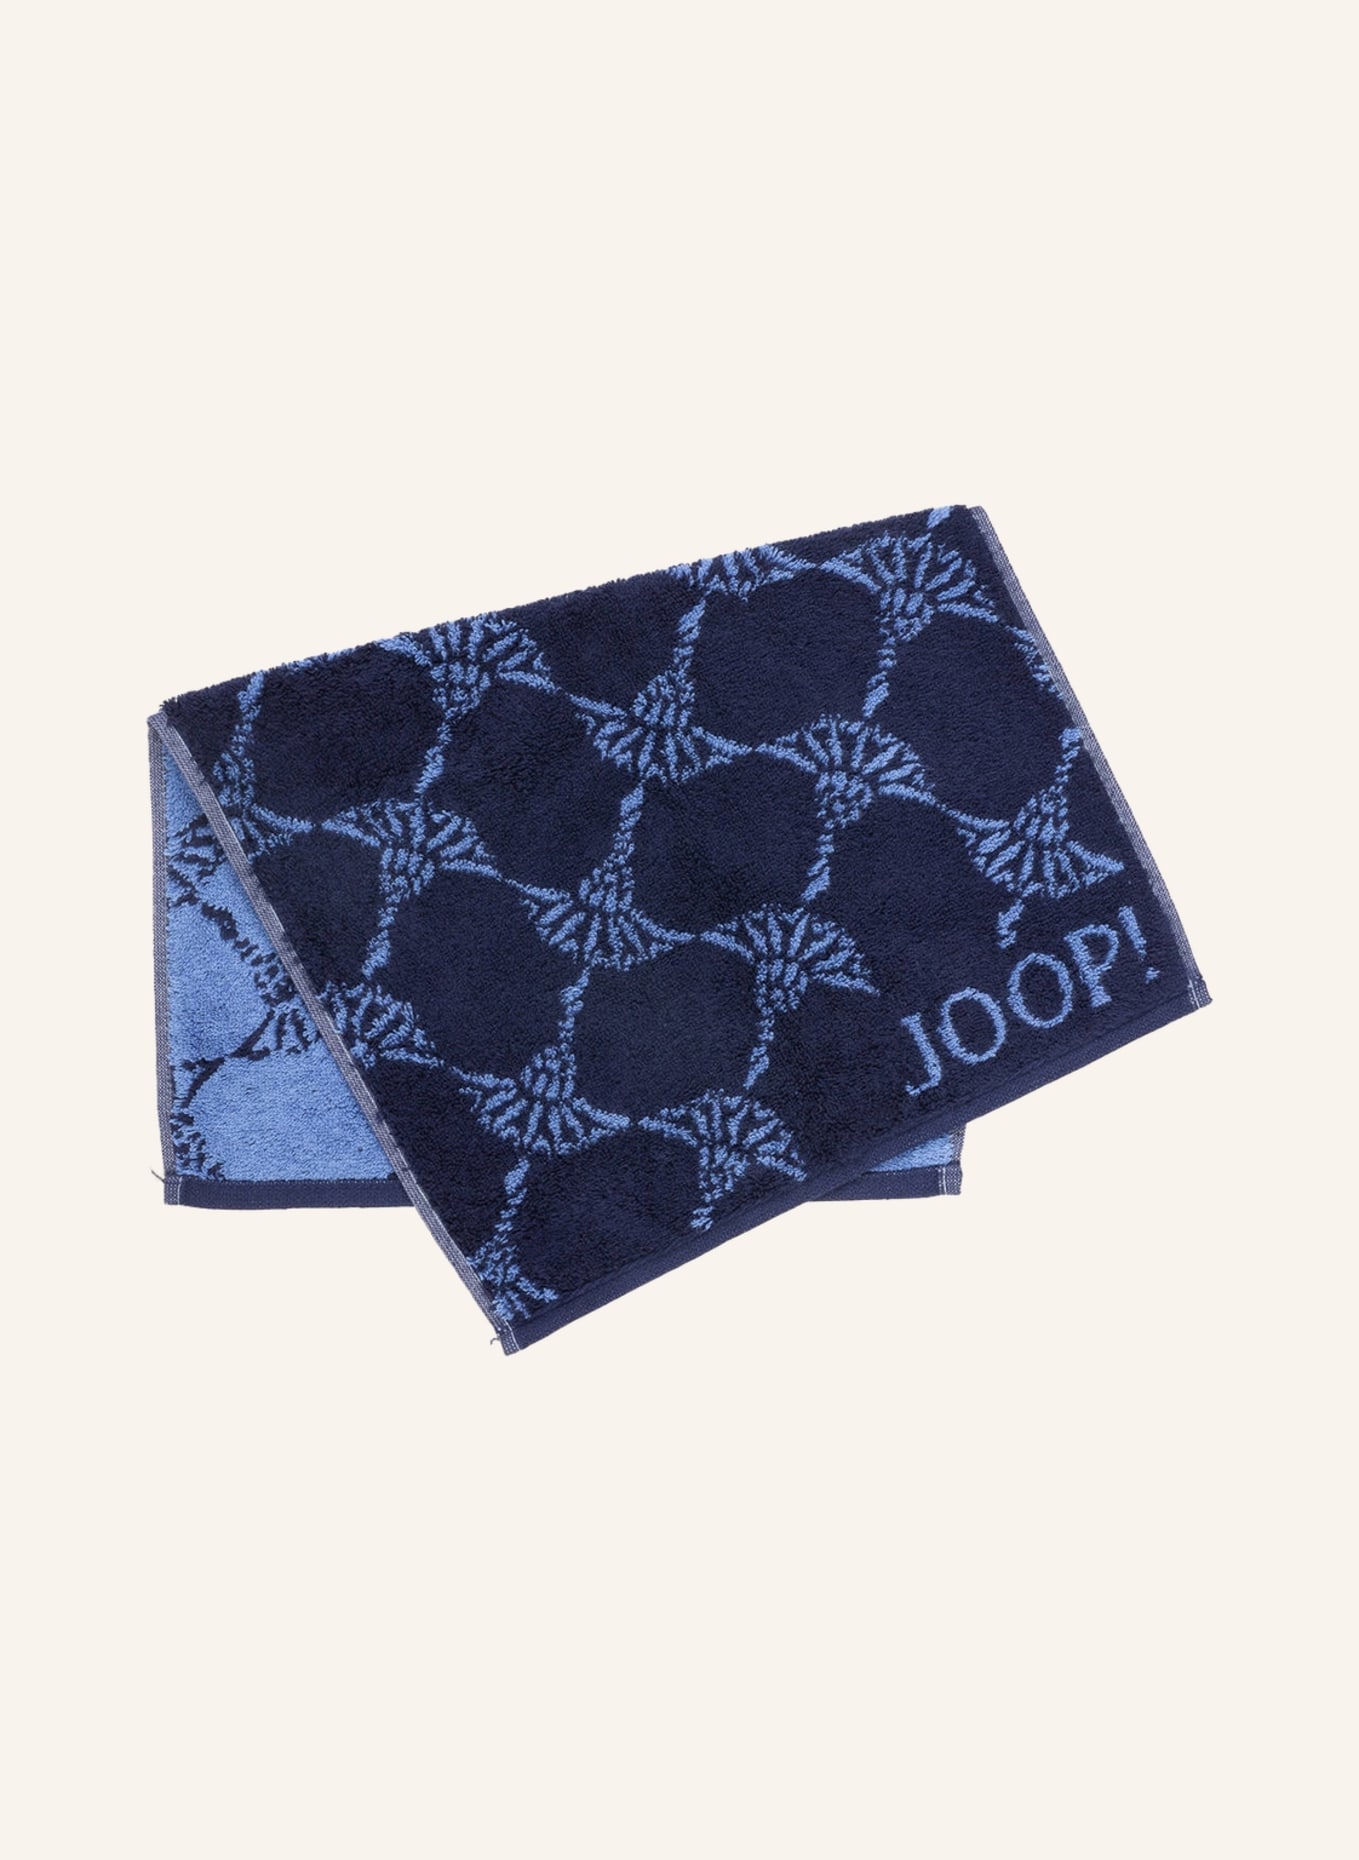 JOOP! Guest towel CORNFLOWER , Color: DARK BLUE (Image 1)